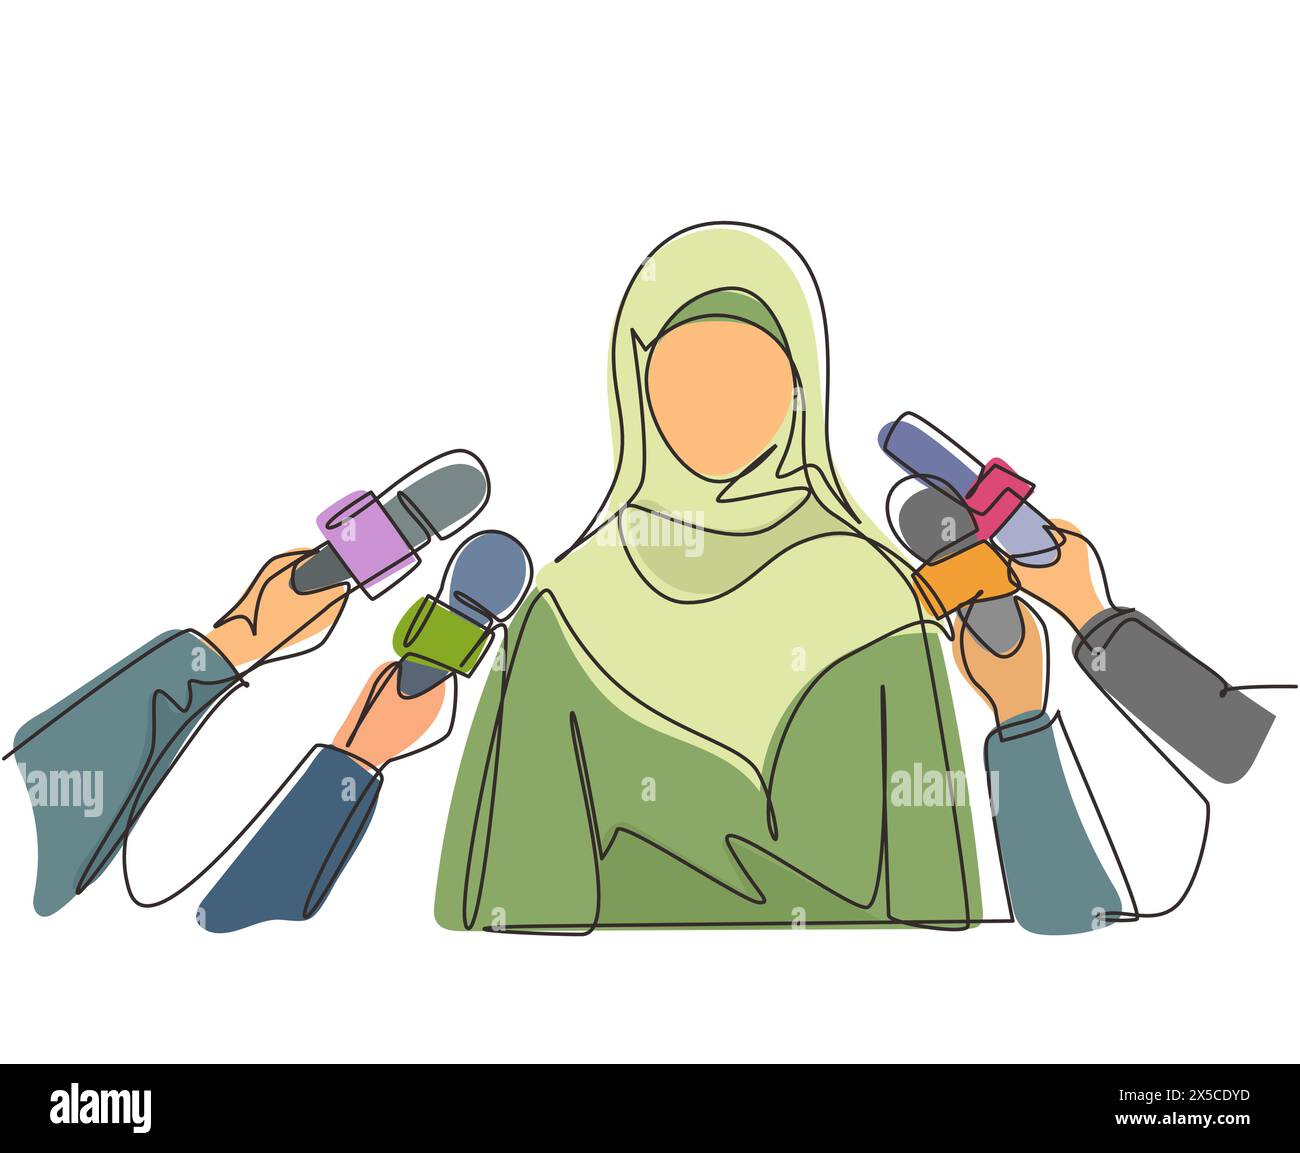 Eine durchgehende Linie zeichnet arabische Frau, die ein Interview gibt. Hände von Journalisten halten Mikrofone. Vorstellung von Nachrichten, Wahlen, Interviews, Kommentaren, Pol Stock Vektor